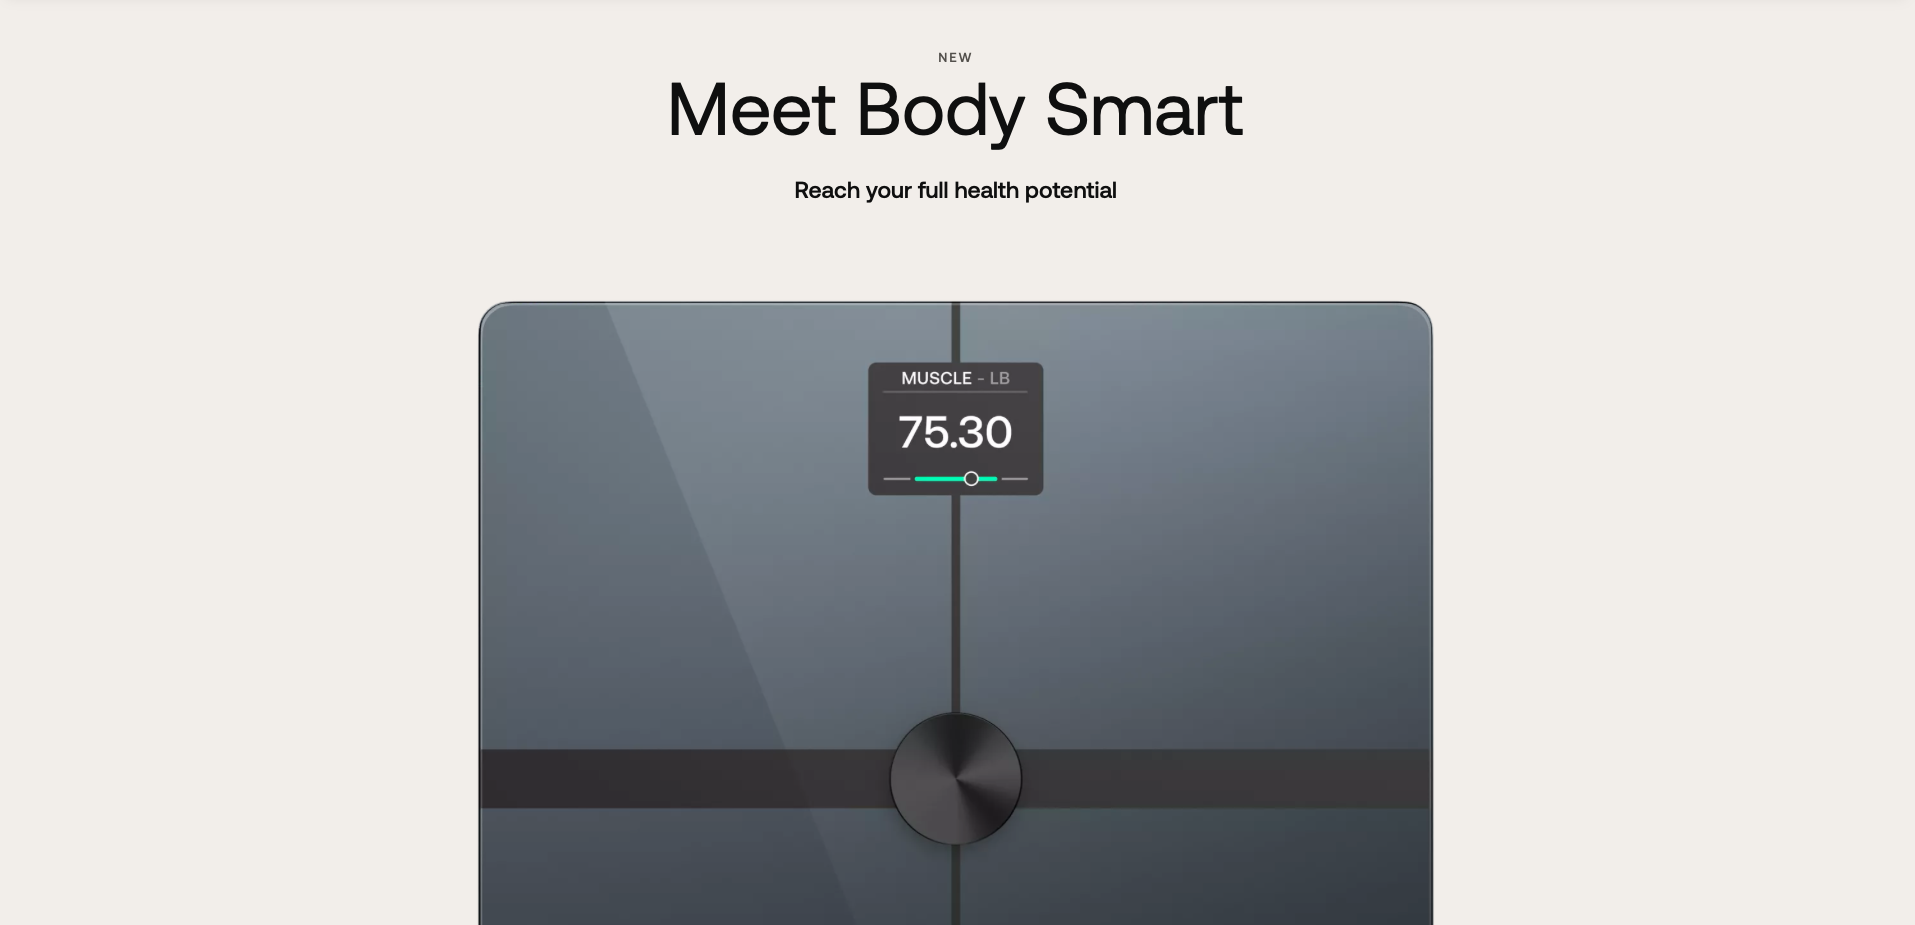 Withings представила Body Smart Scale: розумні ваги з LCD-екраном та підтримкою Apple Health/Google Fit